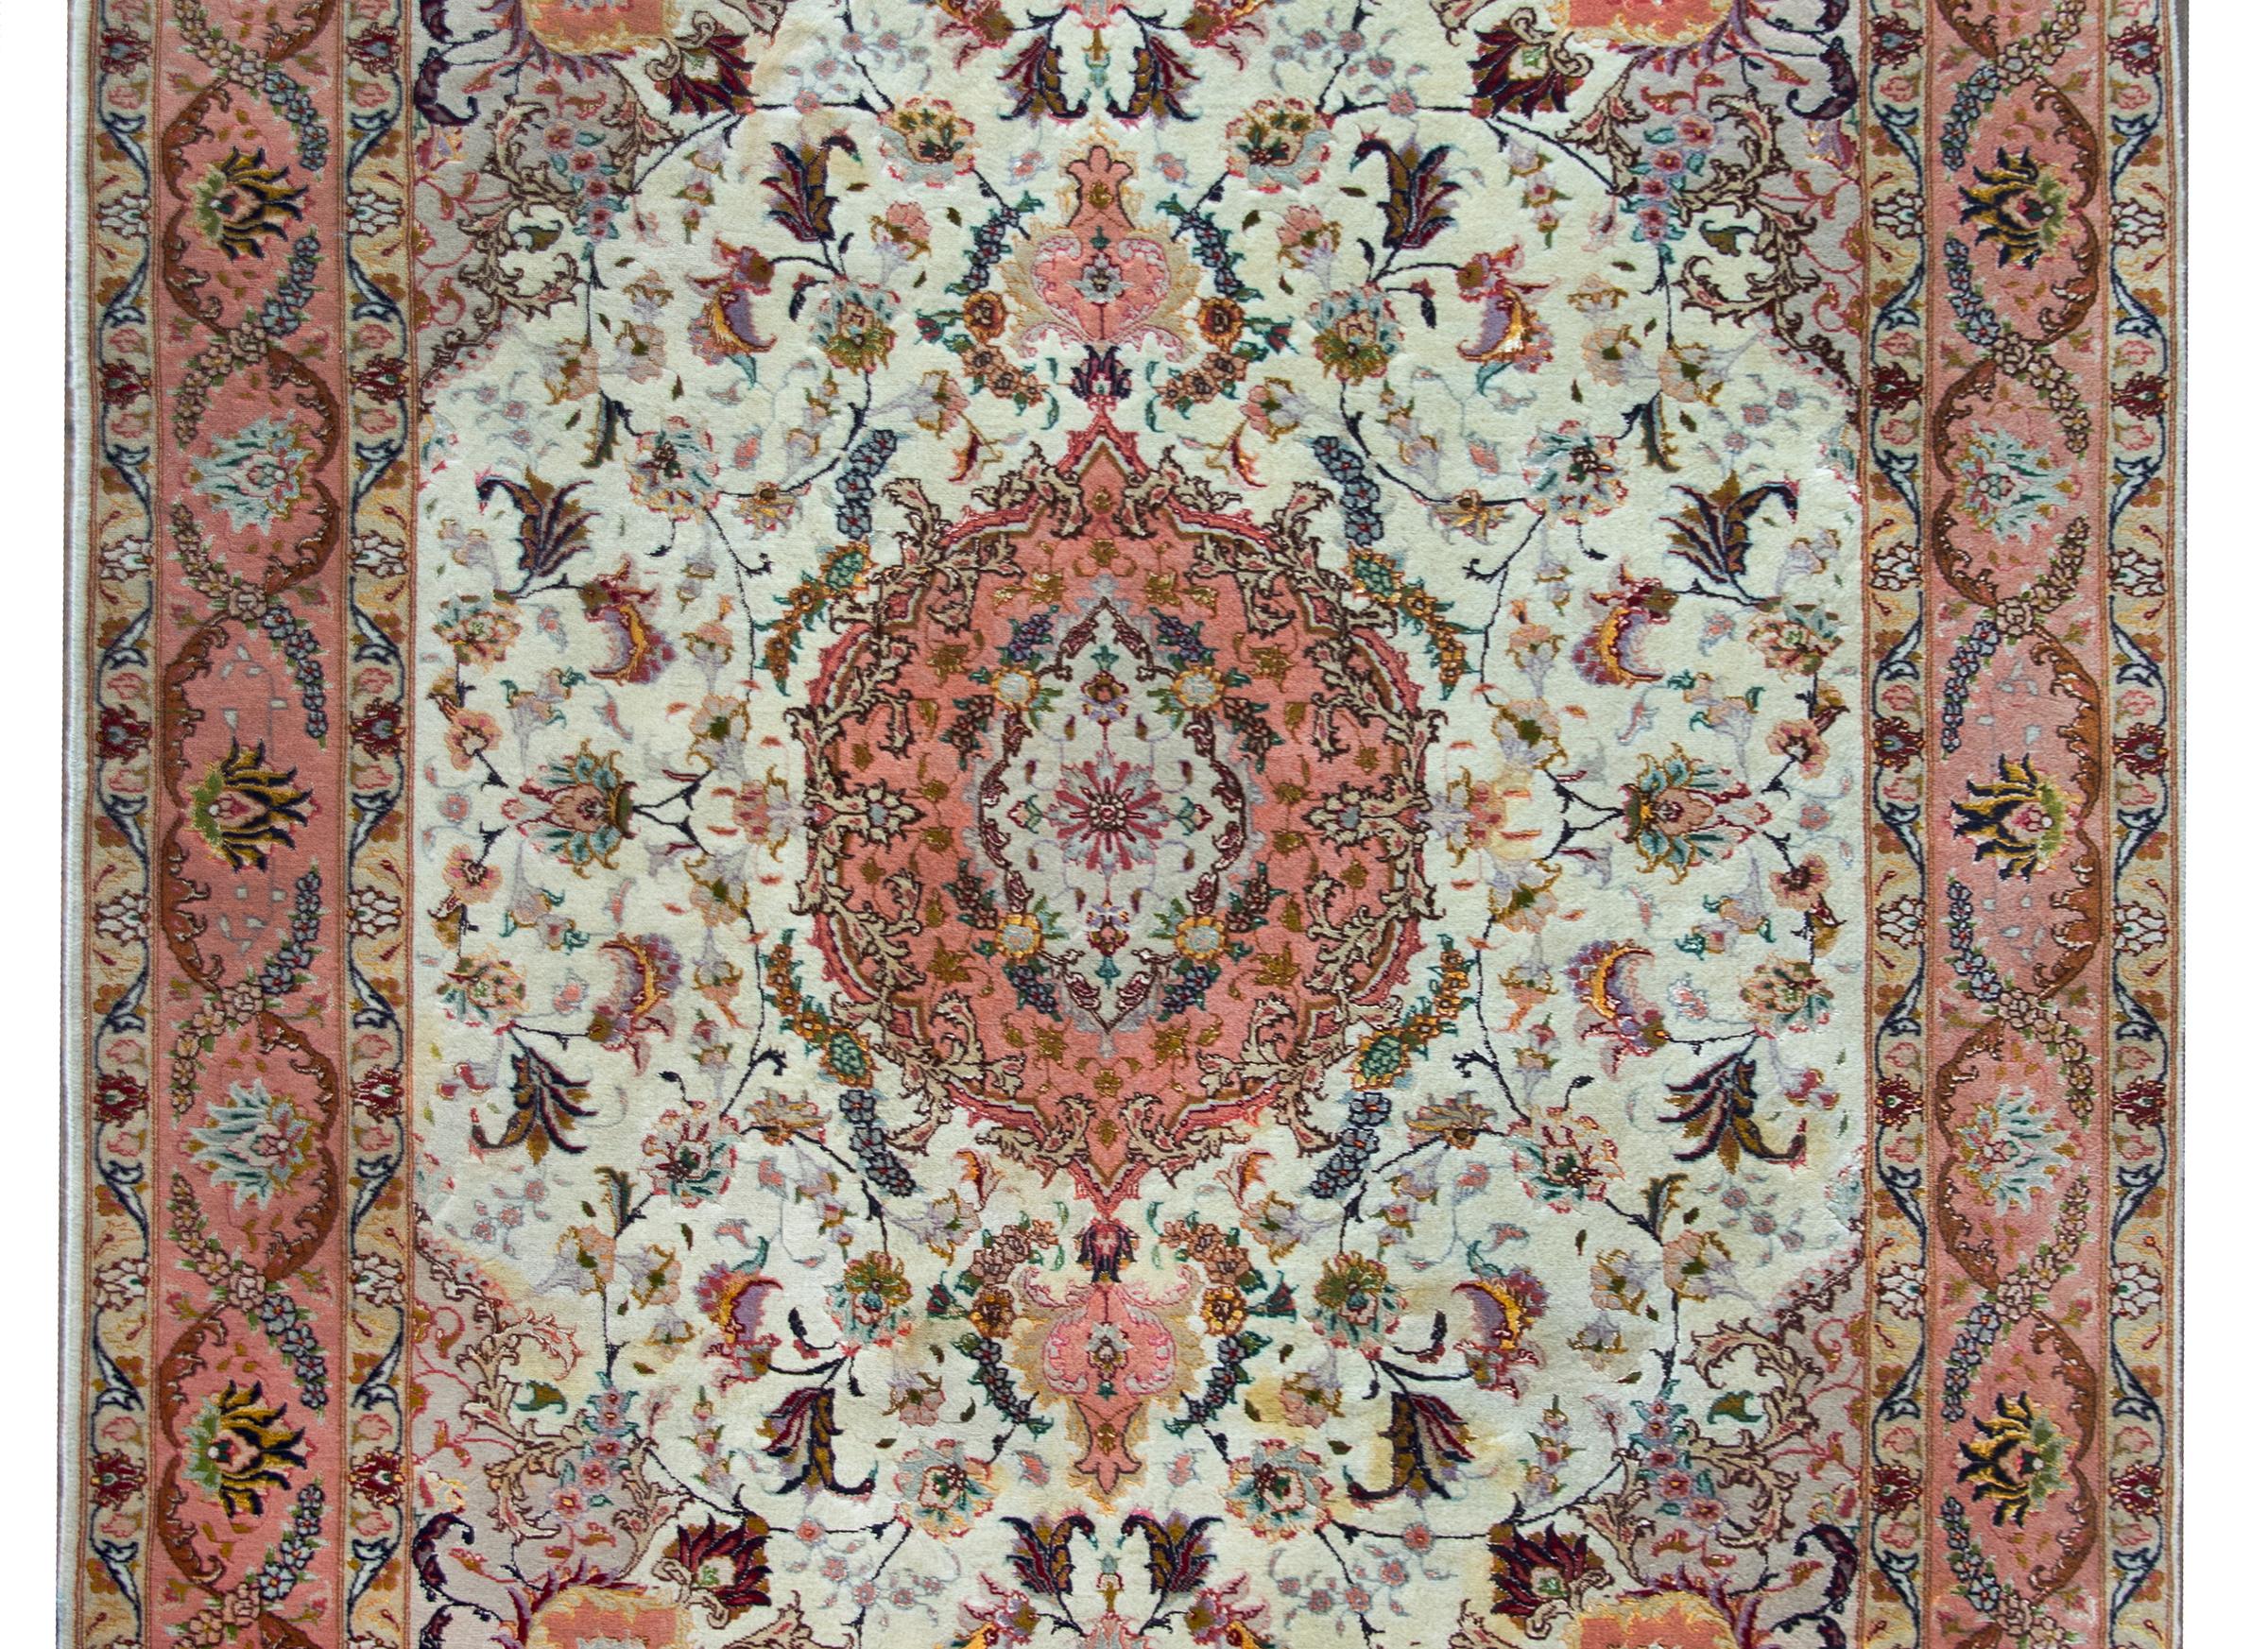 Remarquable tapis persan Tabriz du XXe siècle, avec un grand médaillon floral central vivant au milieu d'un champ de fleurs et de vignes encore plus nombreuses, et entouré d'une sensationnelle bordure à motifs floraux élaborés, le tout tissé dans de